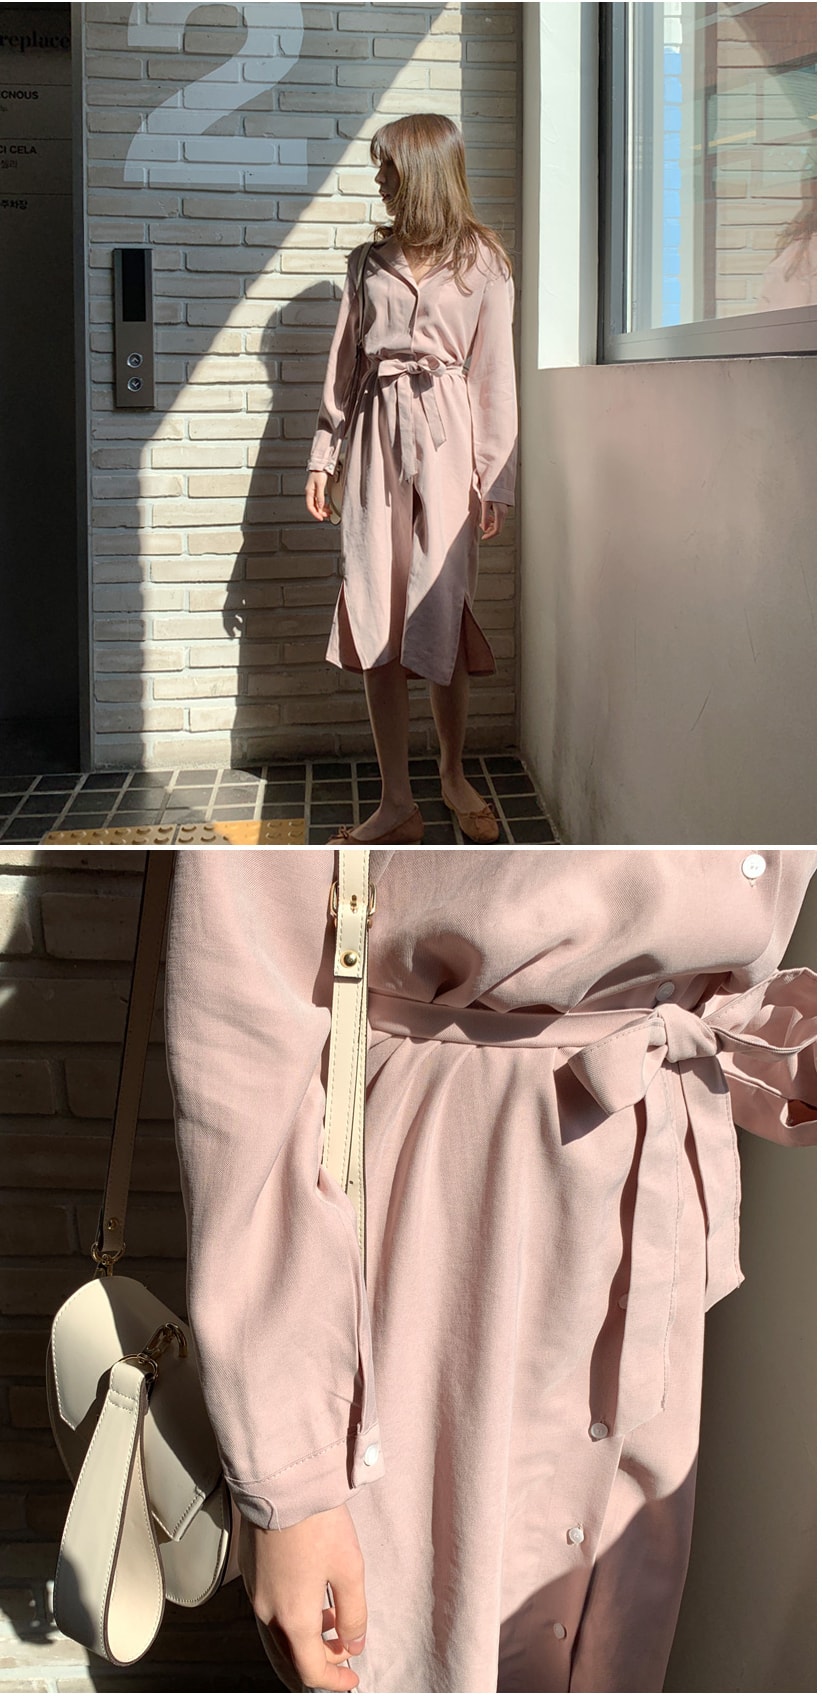 【韩国直邮】MIMIDIDI V领侧开叉设计连衣裙 浅粉色 均码